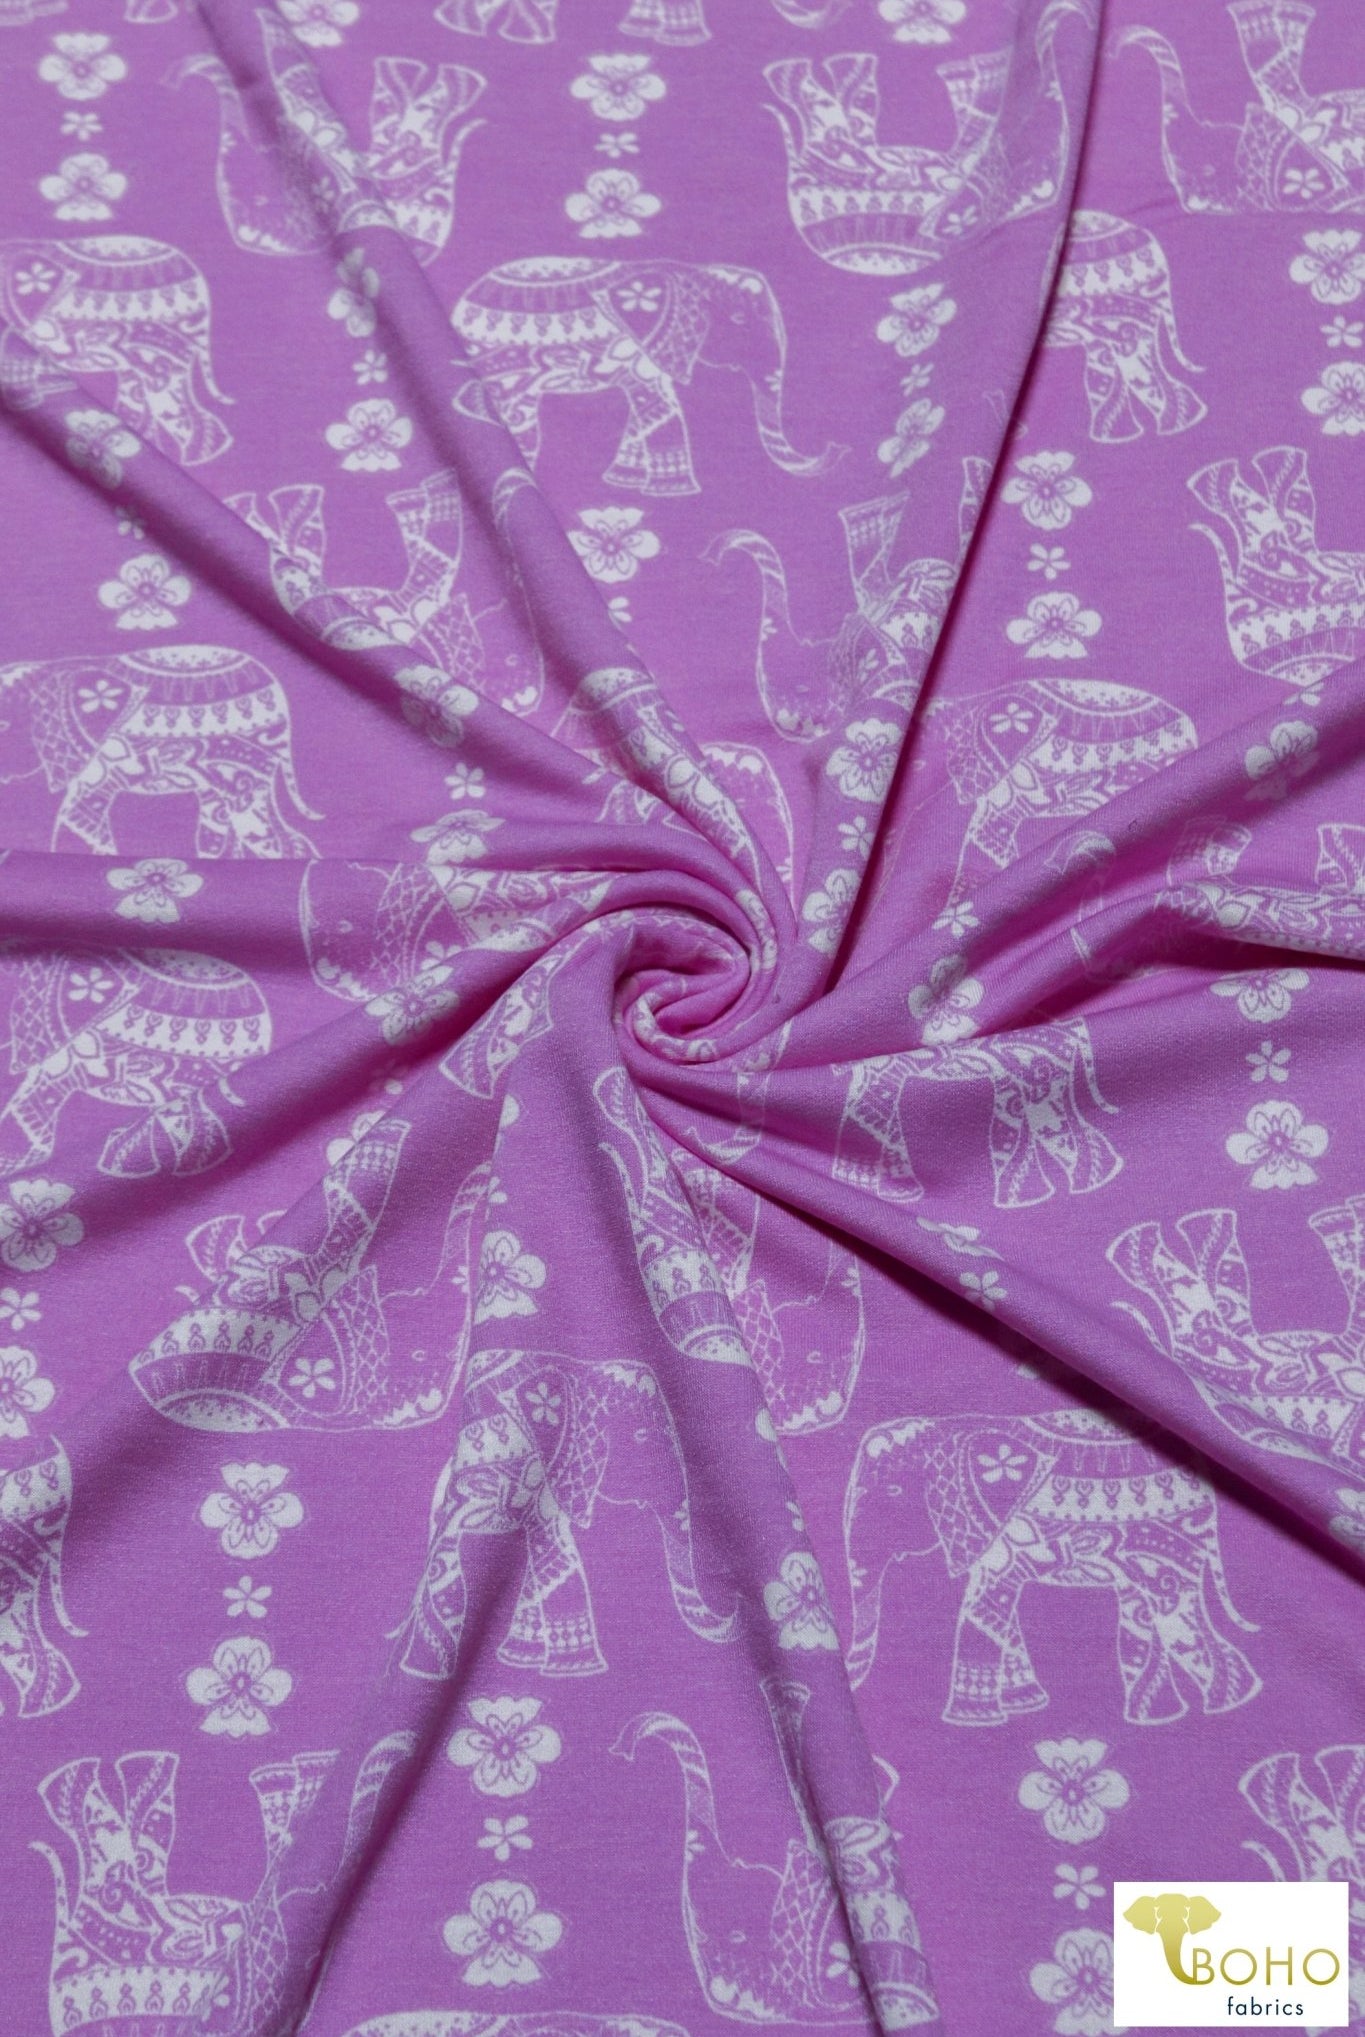 Elephant Parade on Fuchsia, French Terry Knit Print. FTP-326-FSH - Boho Fabrics